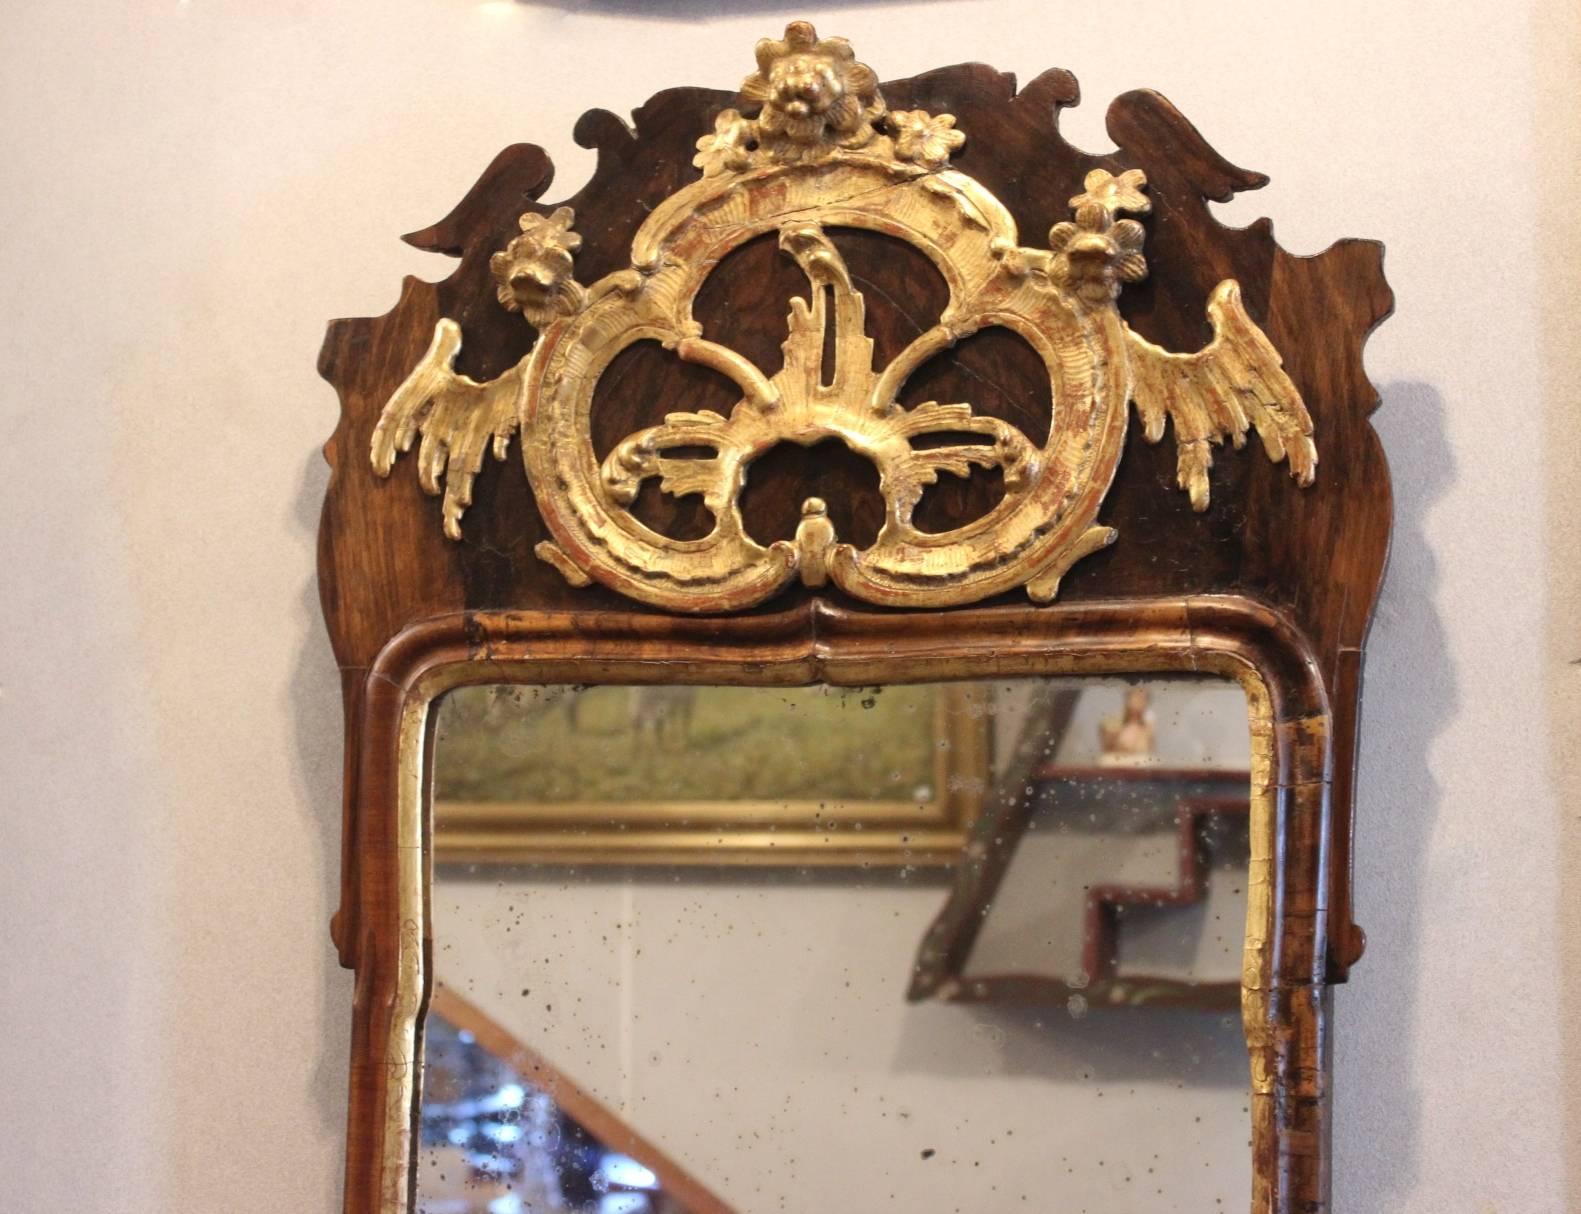 Spiegel im Rokokostil aus den 1740er Jahren, Dänemark. Der Spiegel ist in seinem ursprünglichen Zustand und in Nussbaum.